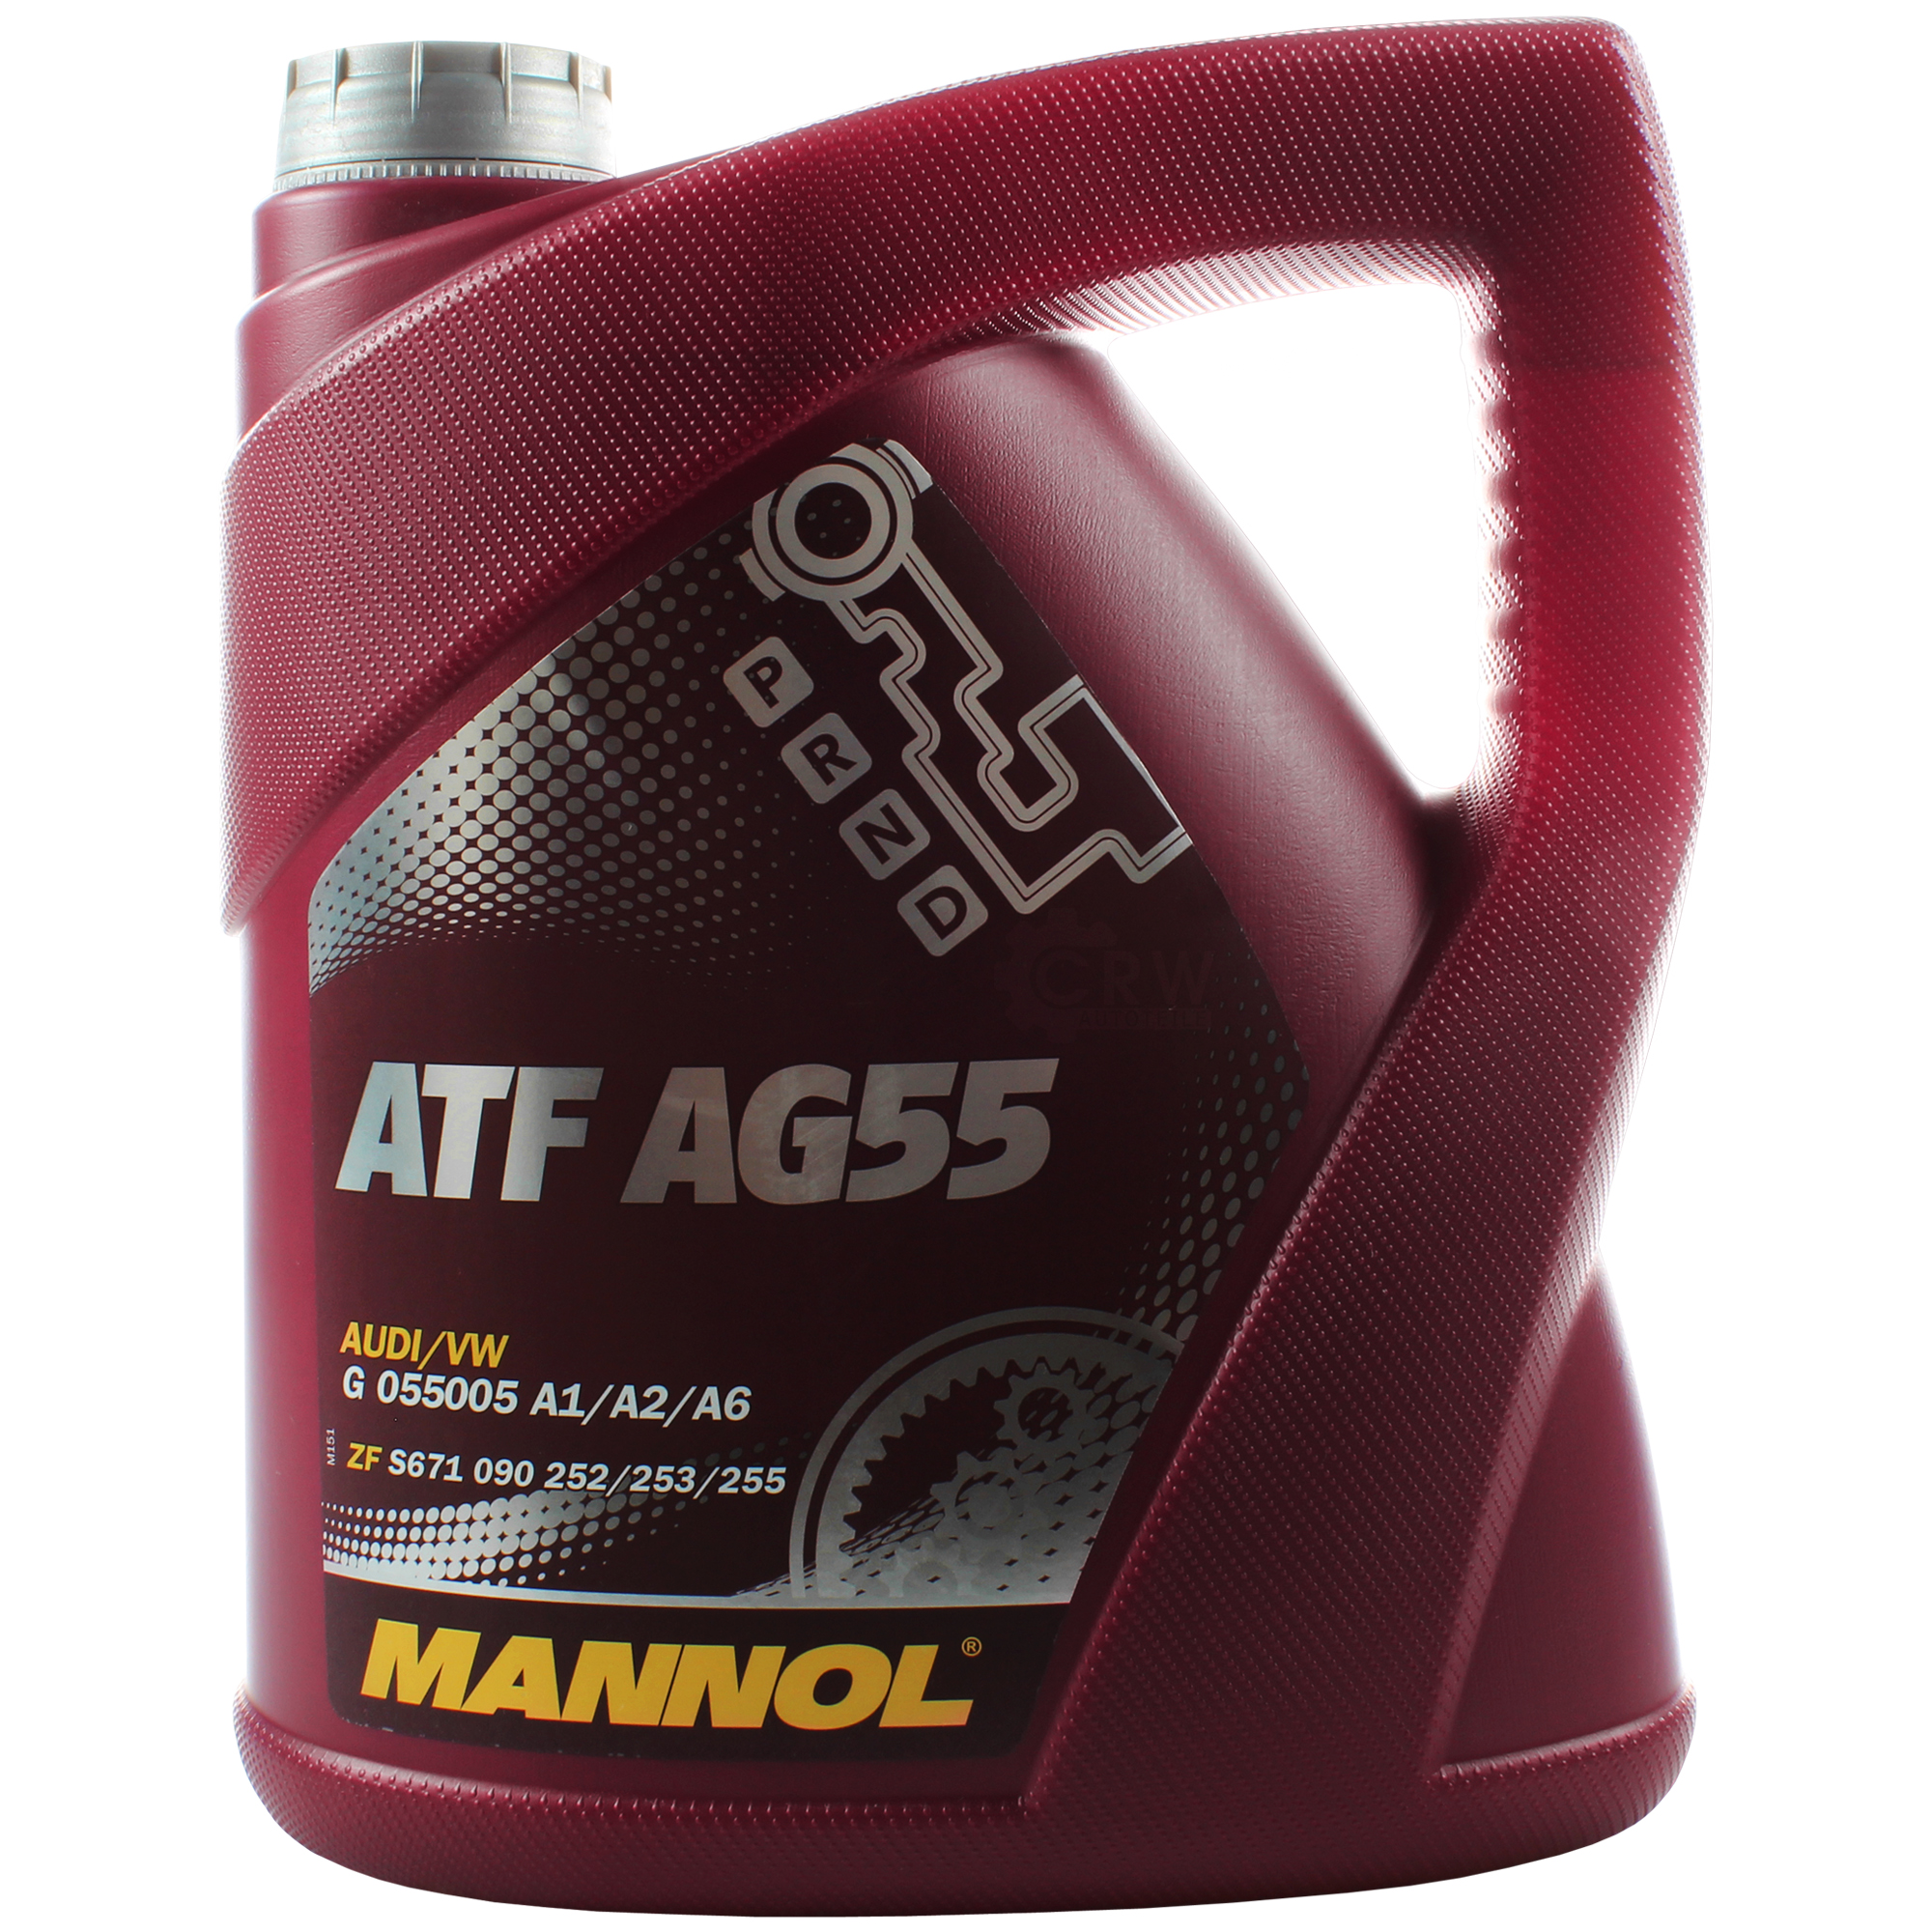 4 Liter MANNOL Hydrauliköl ATF AG55 Hydraulic Fluid Automatikgetriebeöl